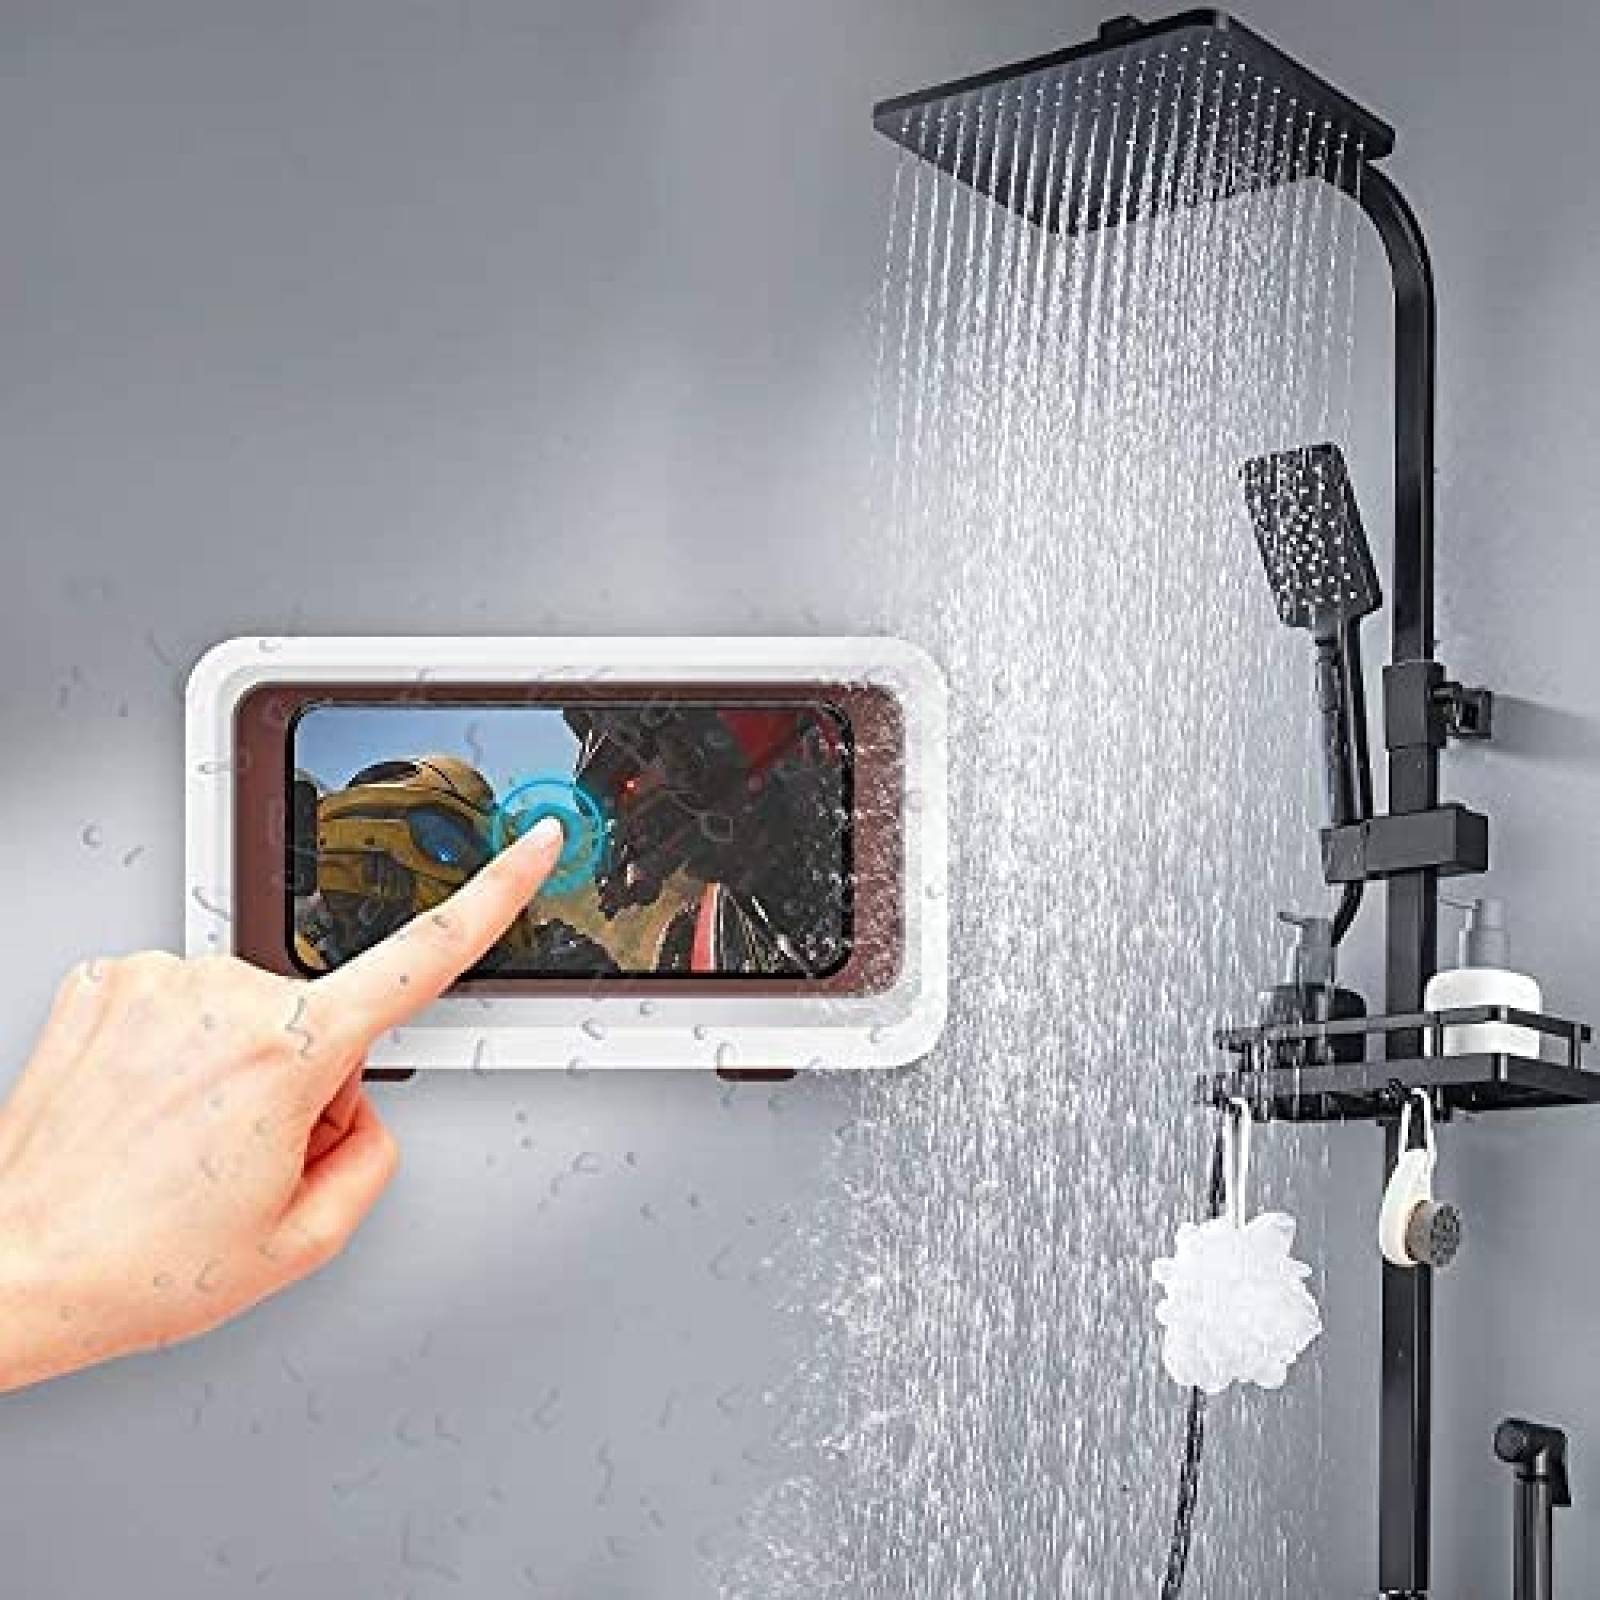  Teléfono-grifo - Teléfono-grifo para ducha con